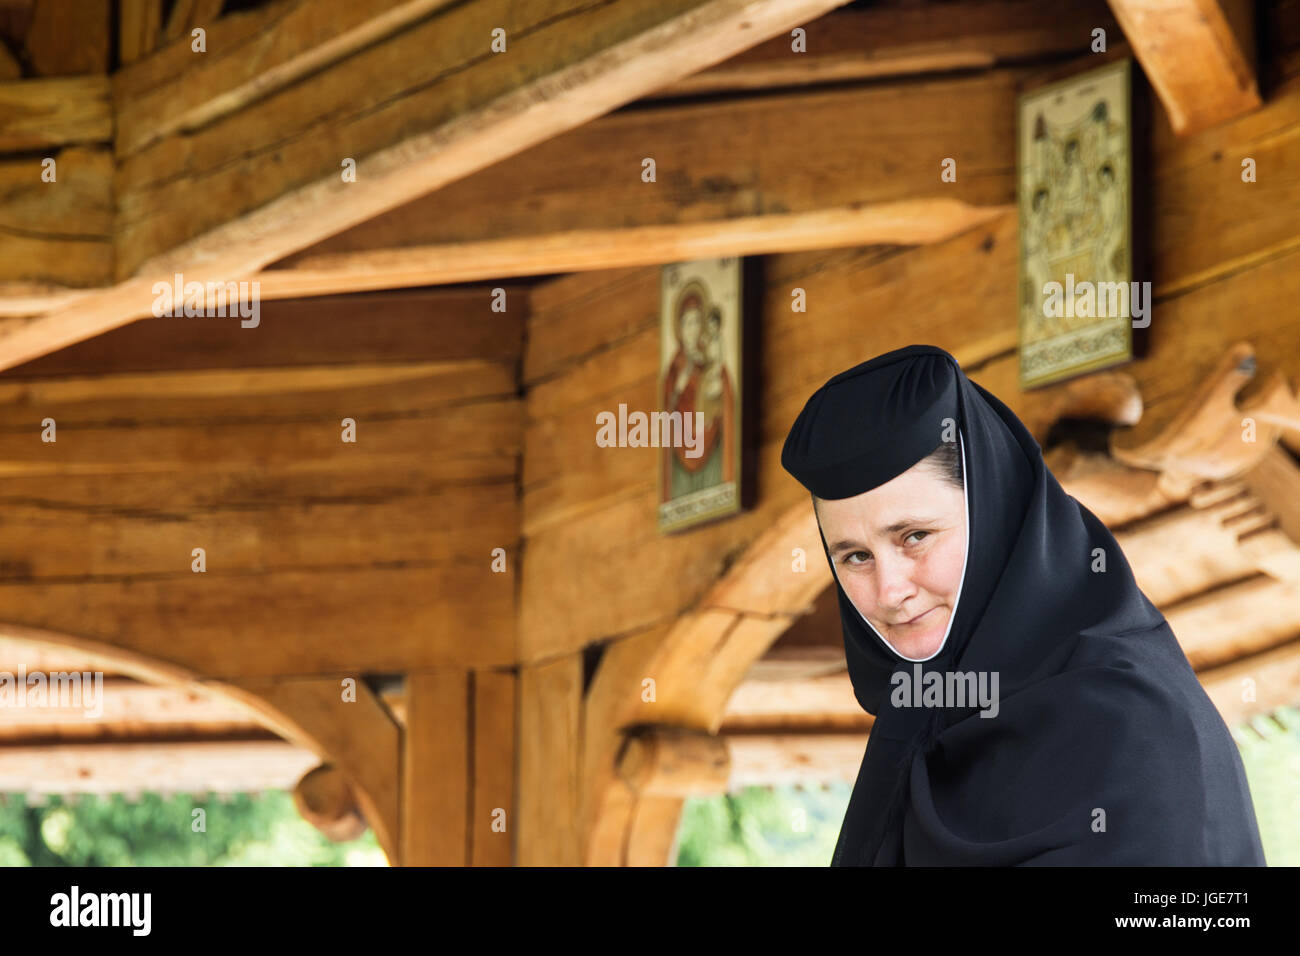 An Orthodox nun at the monastery of Barsana, Maramures region, Romania Stock Photo